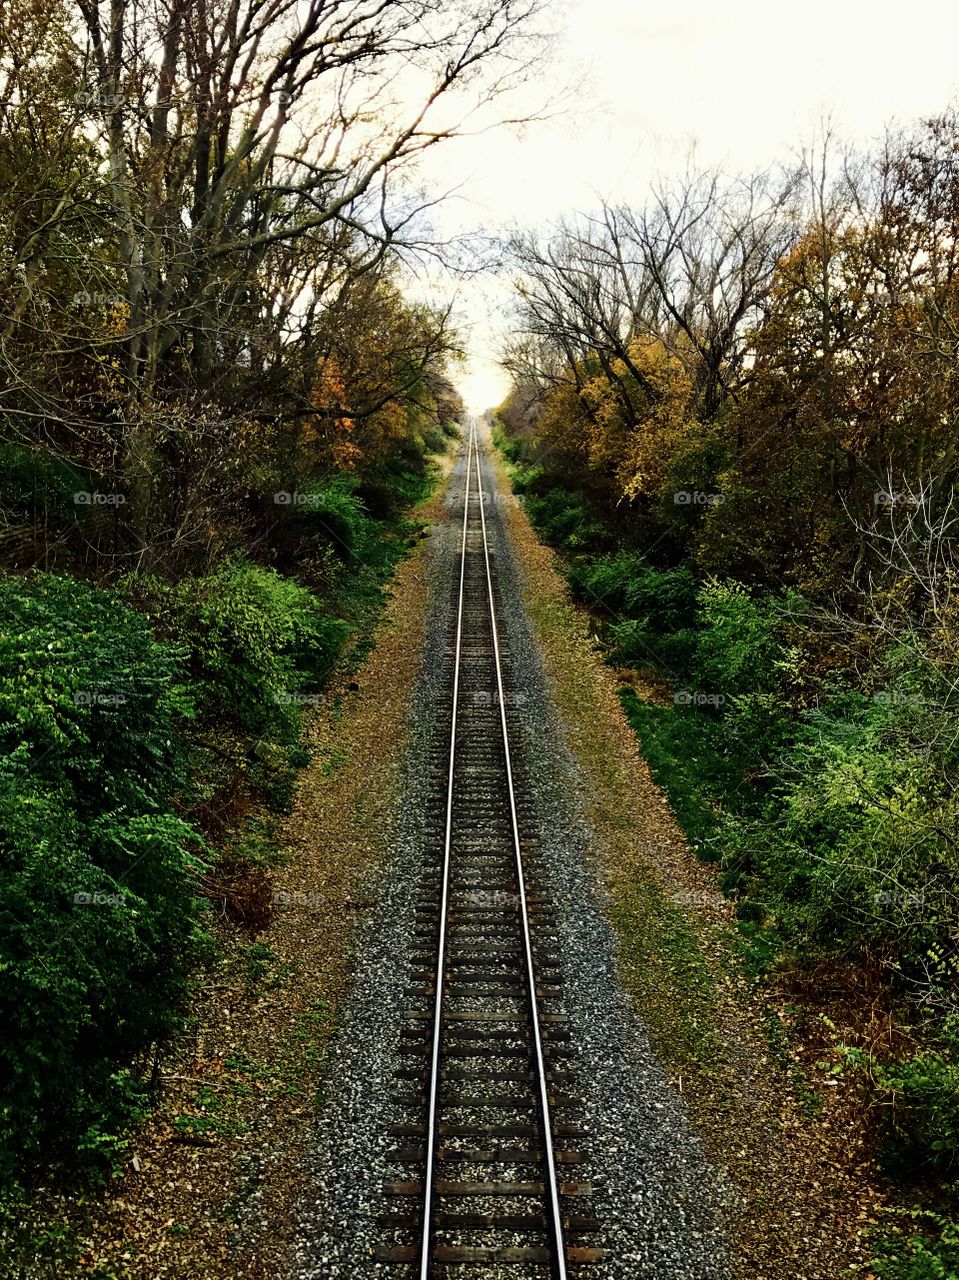 Railroad,
St. Joseph, Mi